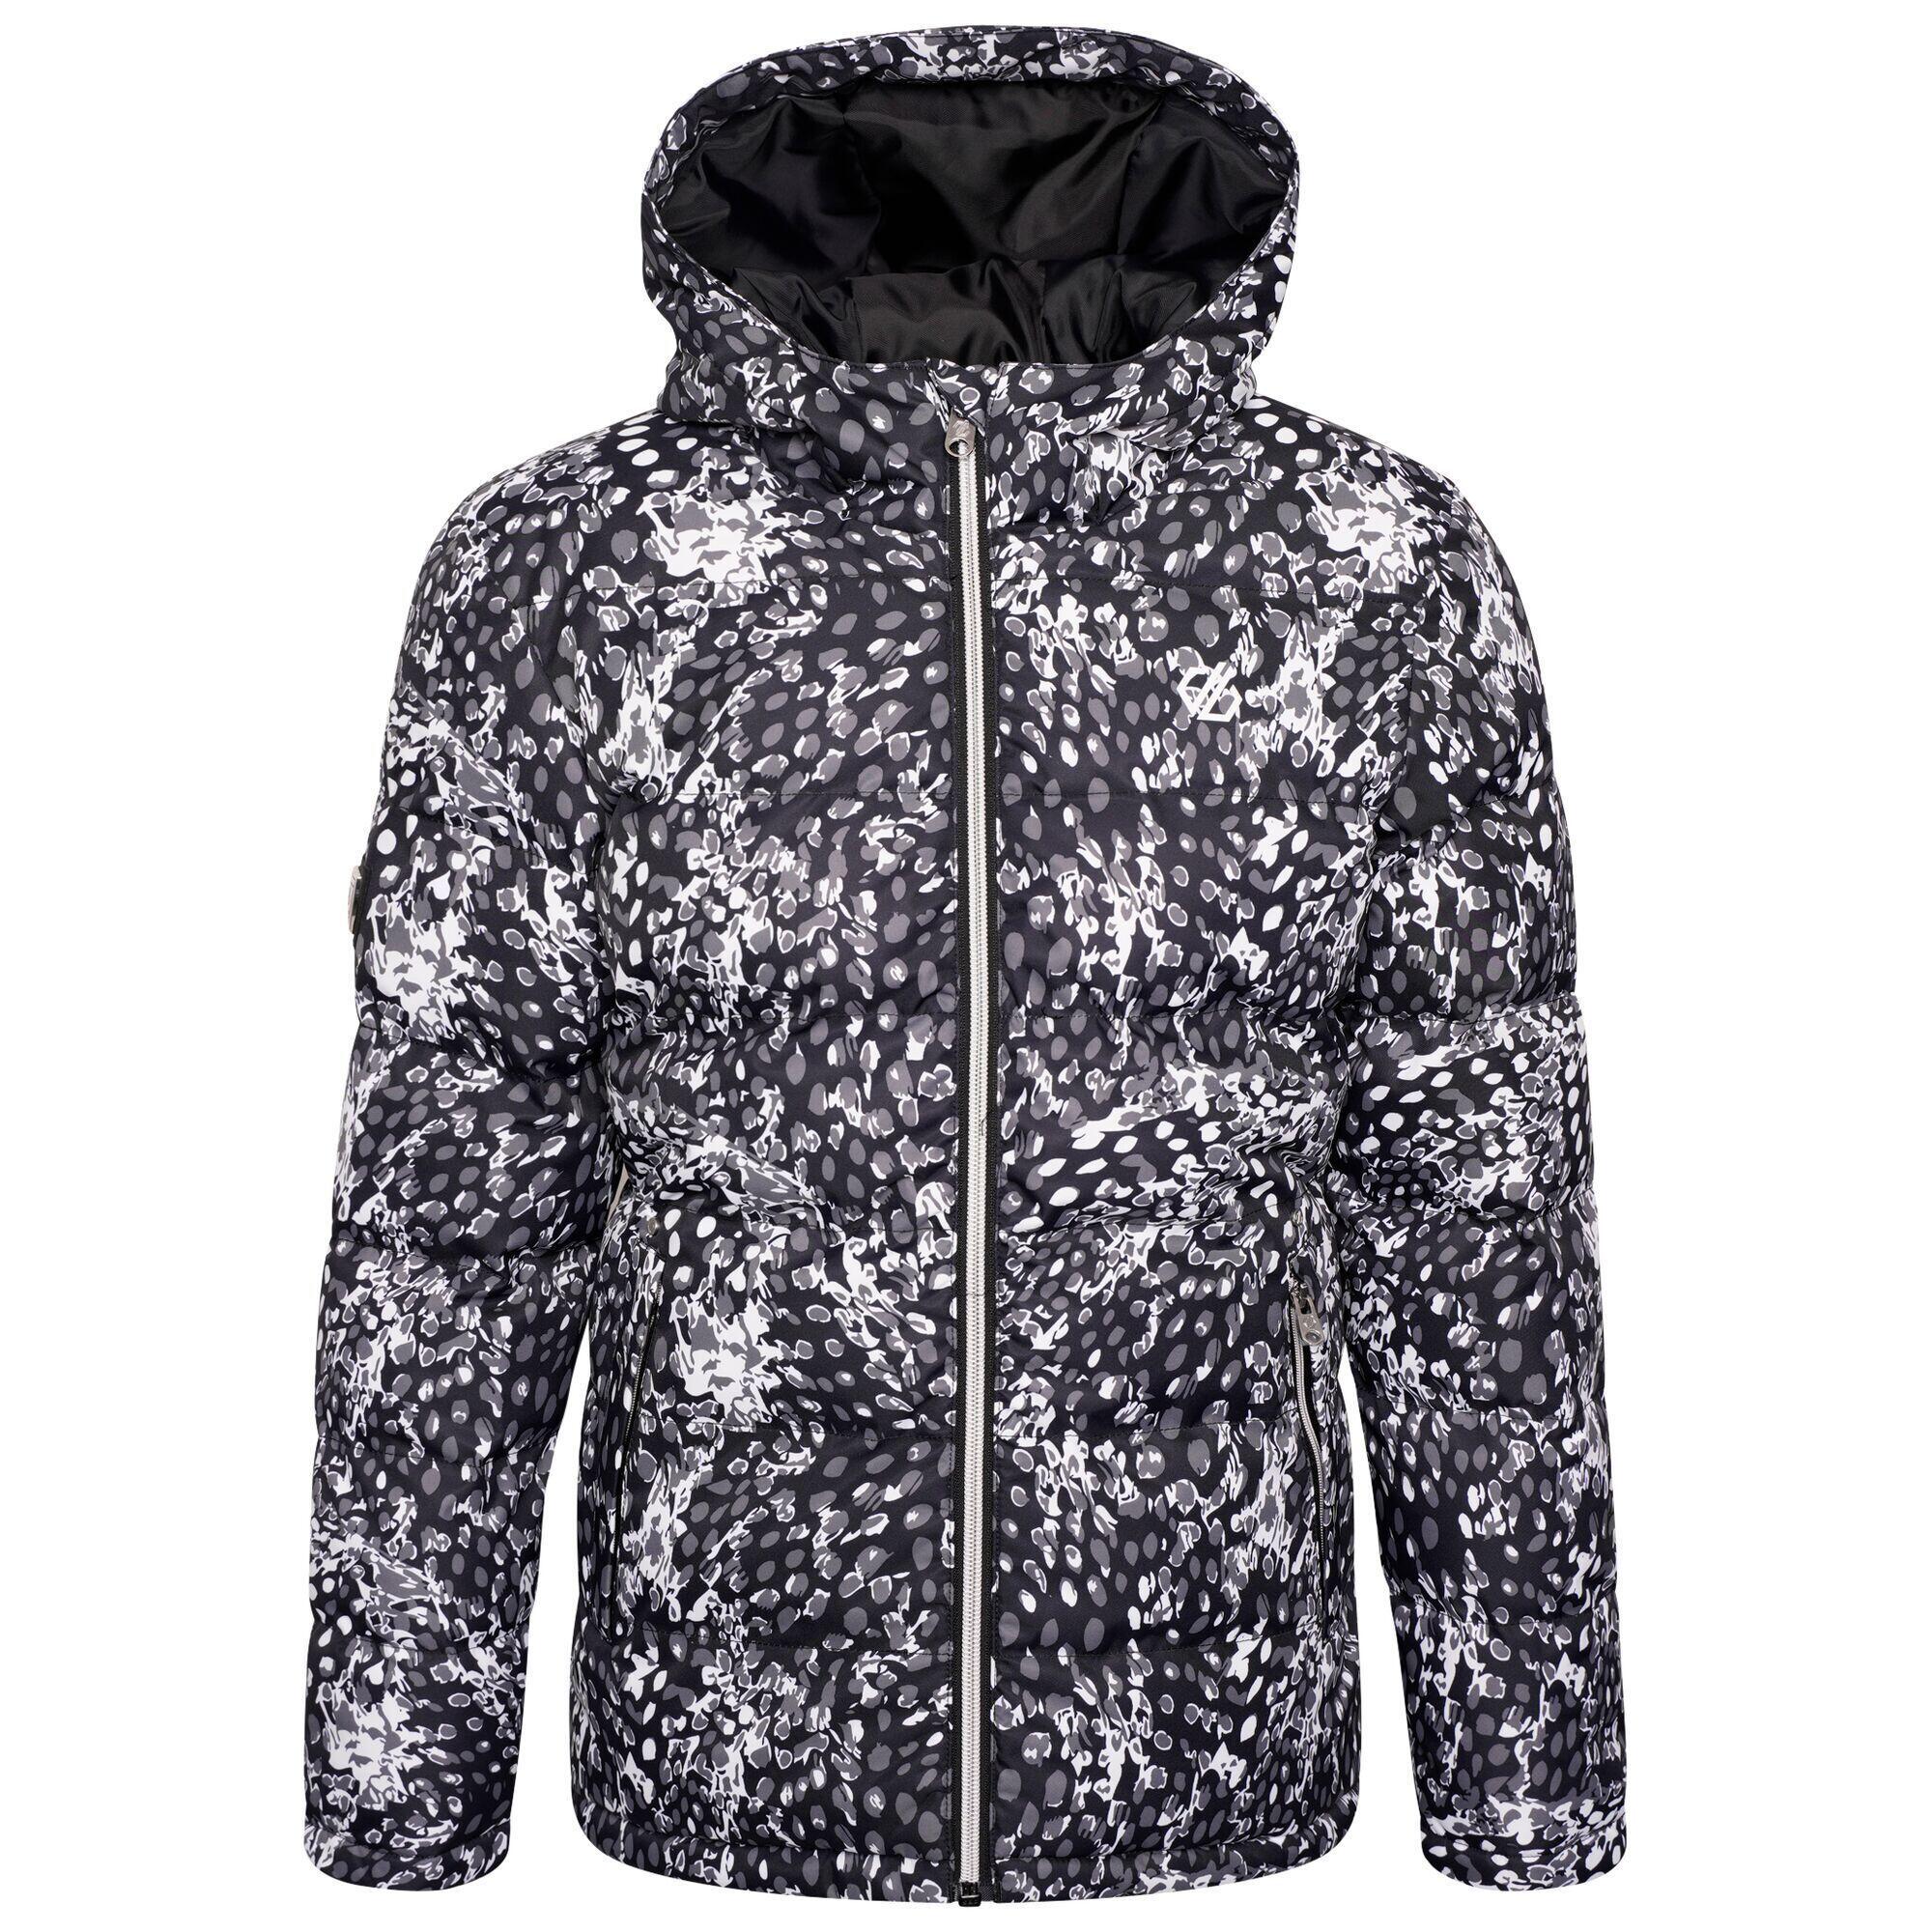 Girls Verdict Leopard Print Insulated Ski Jacket (Black/White) 1/5